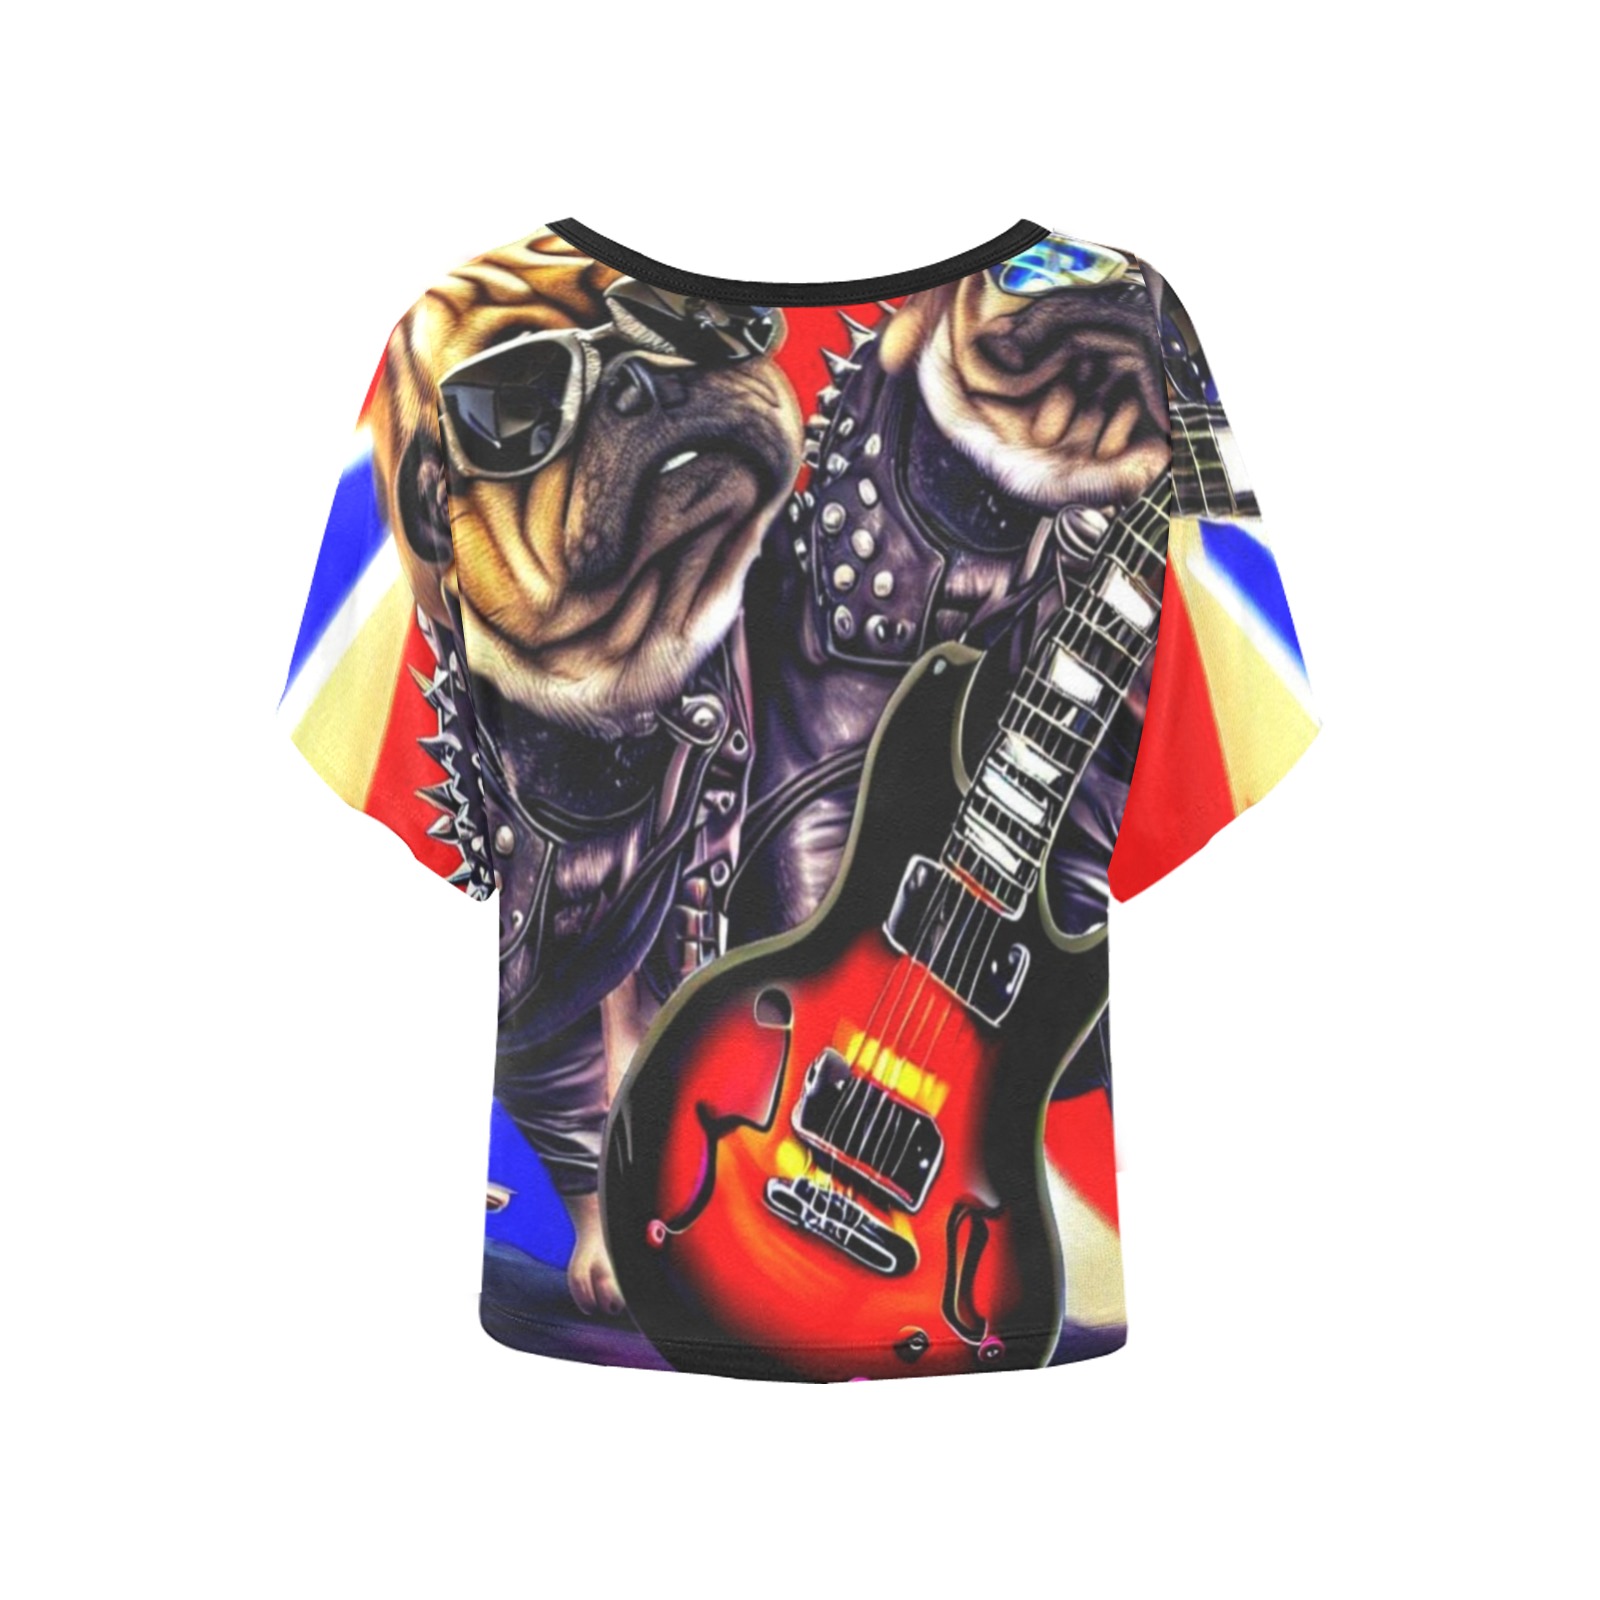 HEAVY ROCK PUG 3 Women's Batwing-Sleeved Blouse T shirt (Model T44)